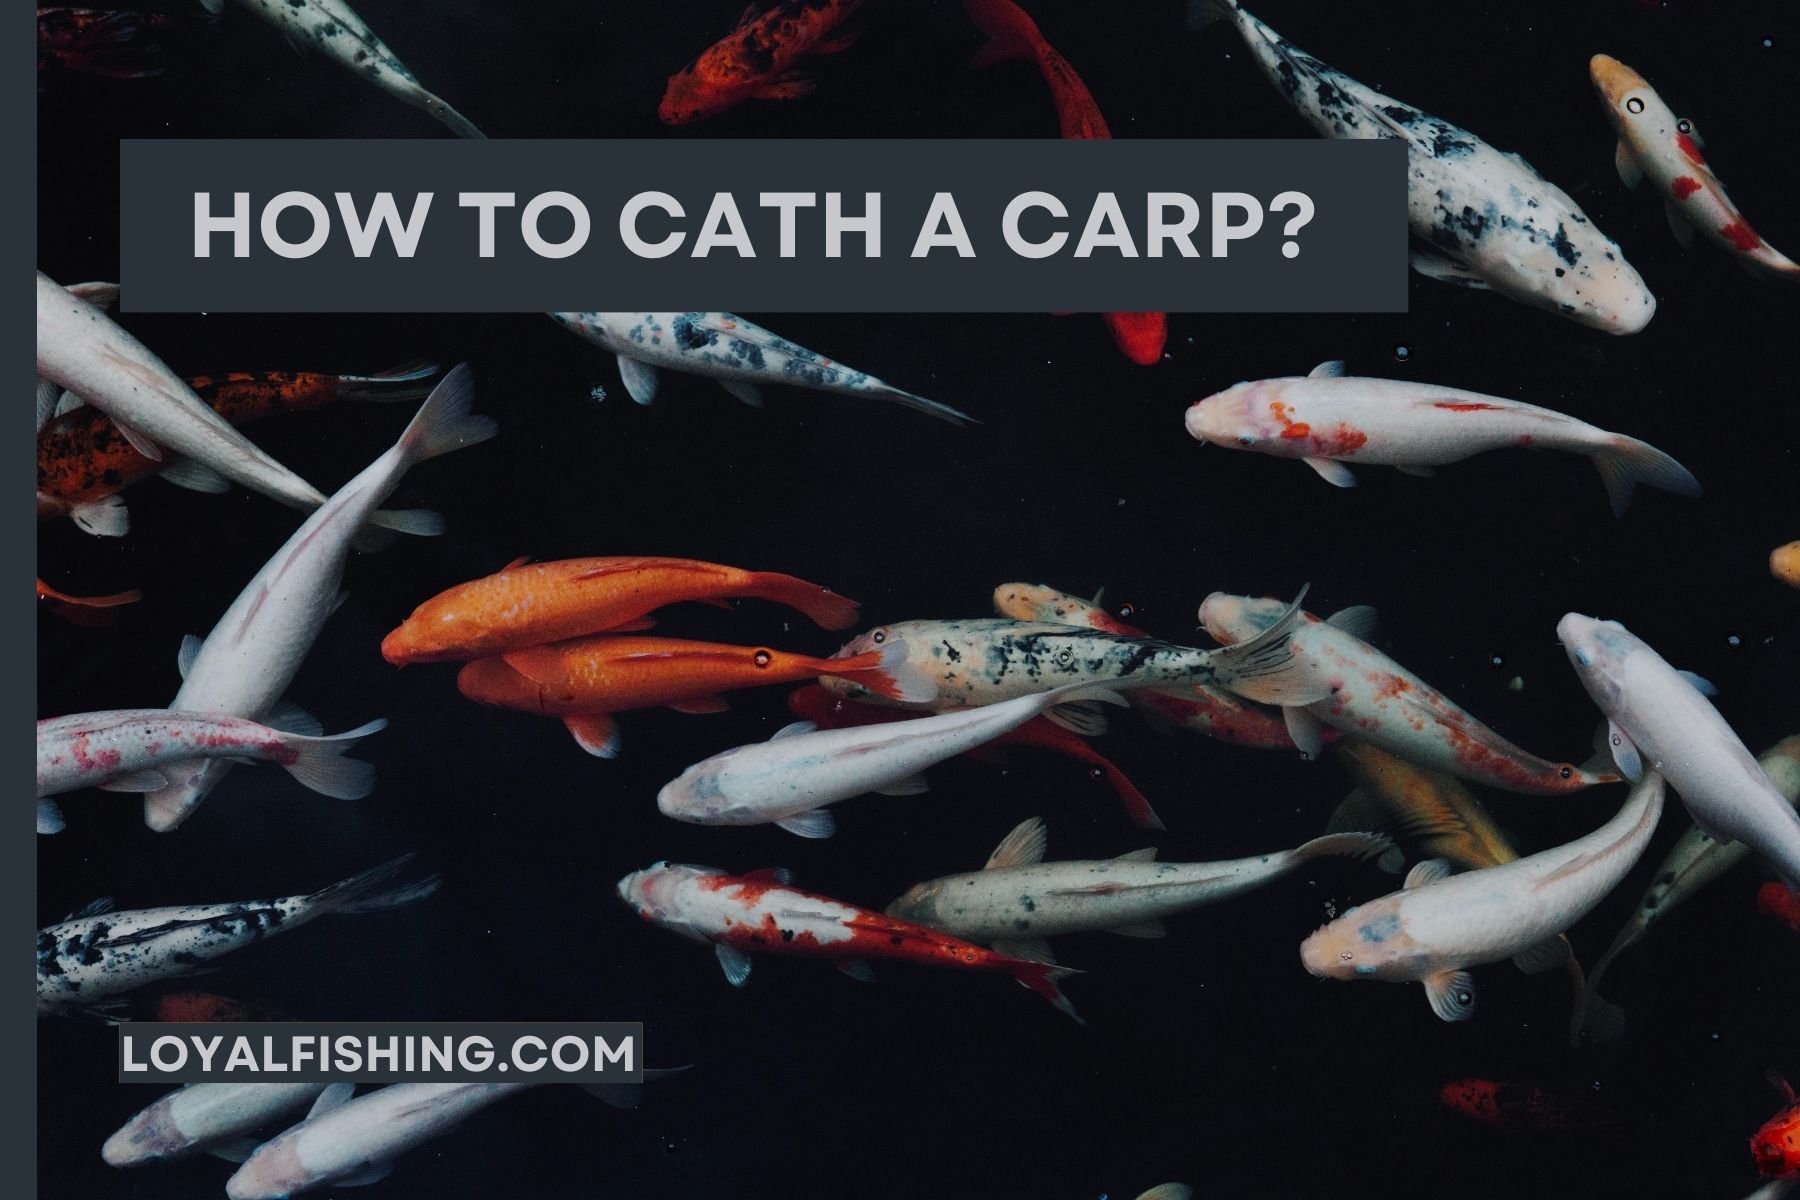 How to Catch a Carp